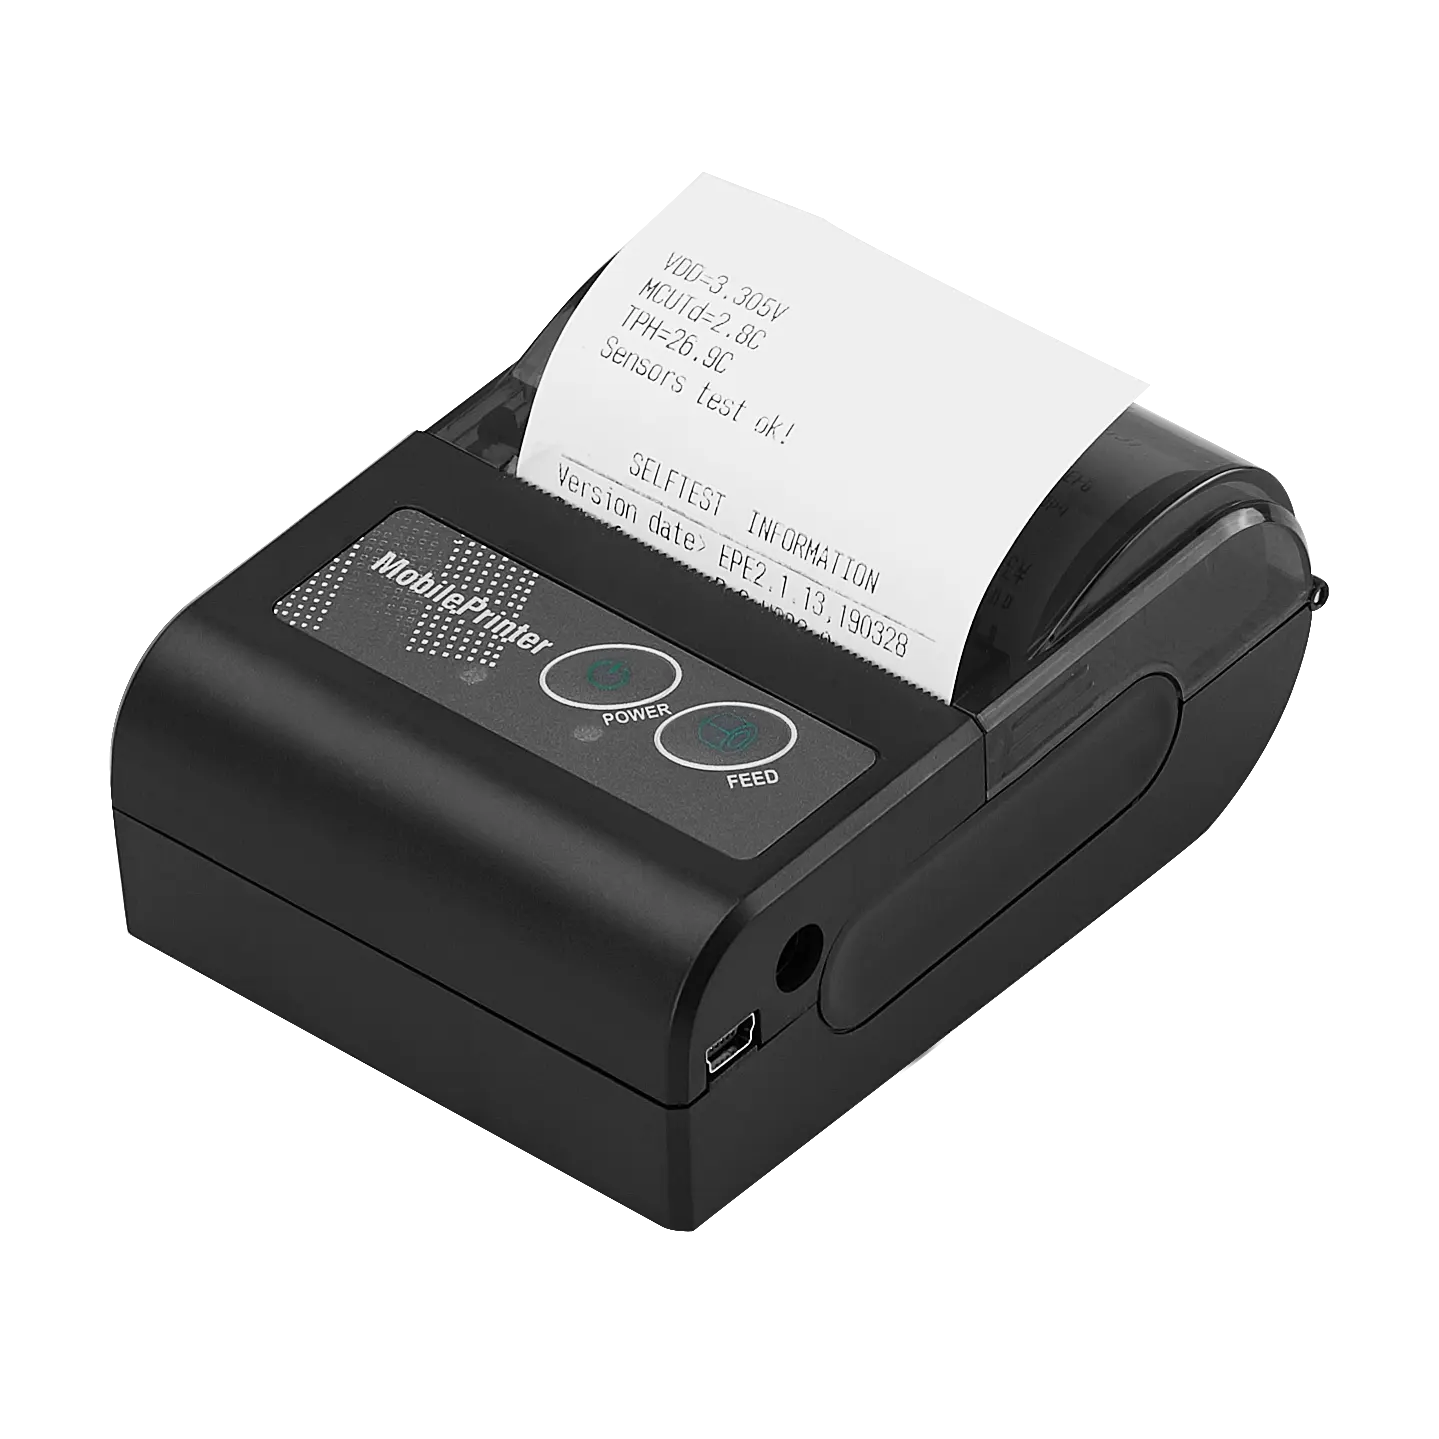 58mm Mini Impressoras Térmicas Impressora Portátil Android IOS Windows Máquina Sem Fio USB Bluetooth Para Small Business Label Printer